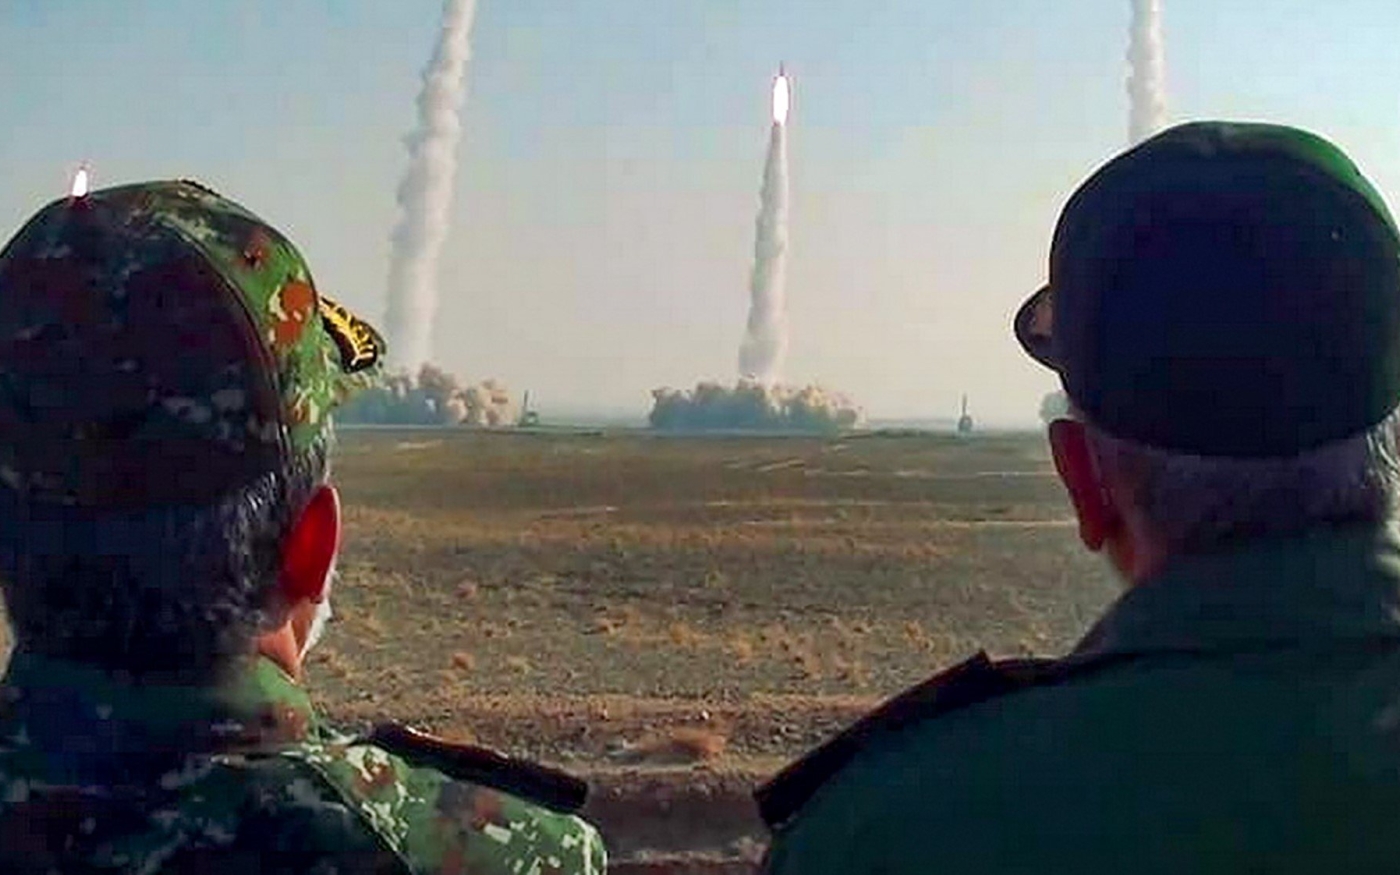 Le chef du Corps des gardiens de la révolution islamique, Hussein Salami (à droite), observe des tirs de missile, lors d’un exercice militaire dans le centre de l’Iran, le 15 janvier 2021 (AFP)